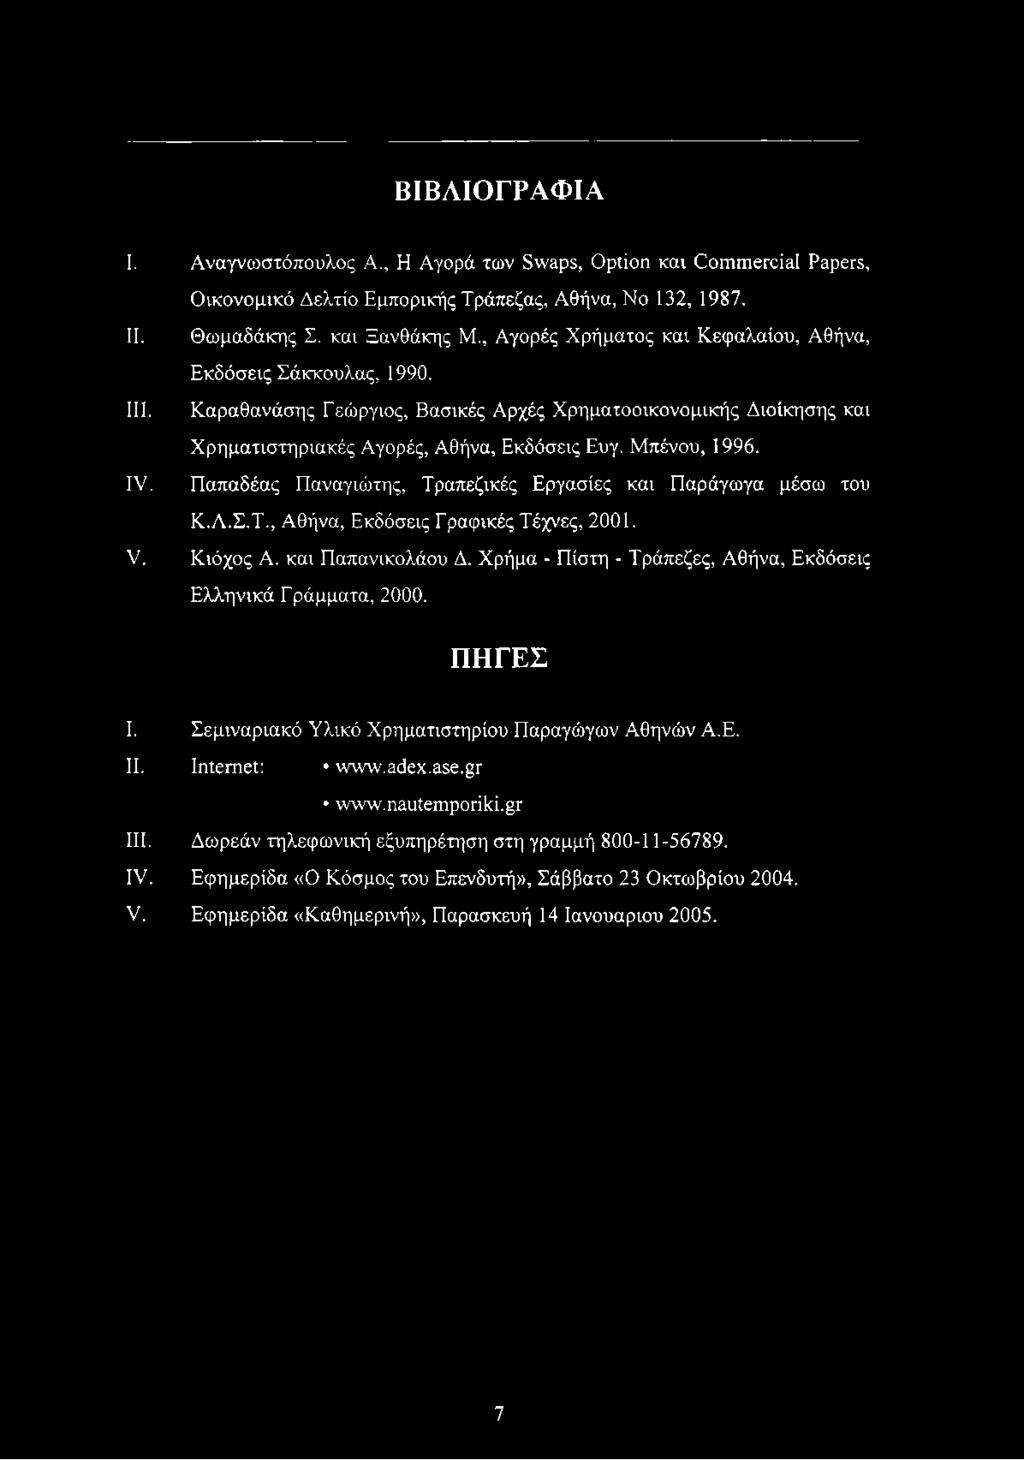 ΒΙΒΛΙΟΓΡΑΦΙΑ I. Αναγνωστόπουλος A., Η Αγορά των Swaps, Option και Commercial Papers, Οικονομικό Δελτίο Εμπορικής Τράπεζας, Αθήνα, Νο 132, 1987. II. Θωμαδάκης Σ. και Ξανθάκης Μ.